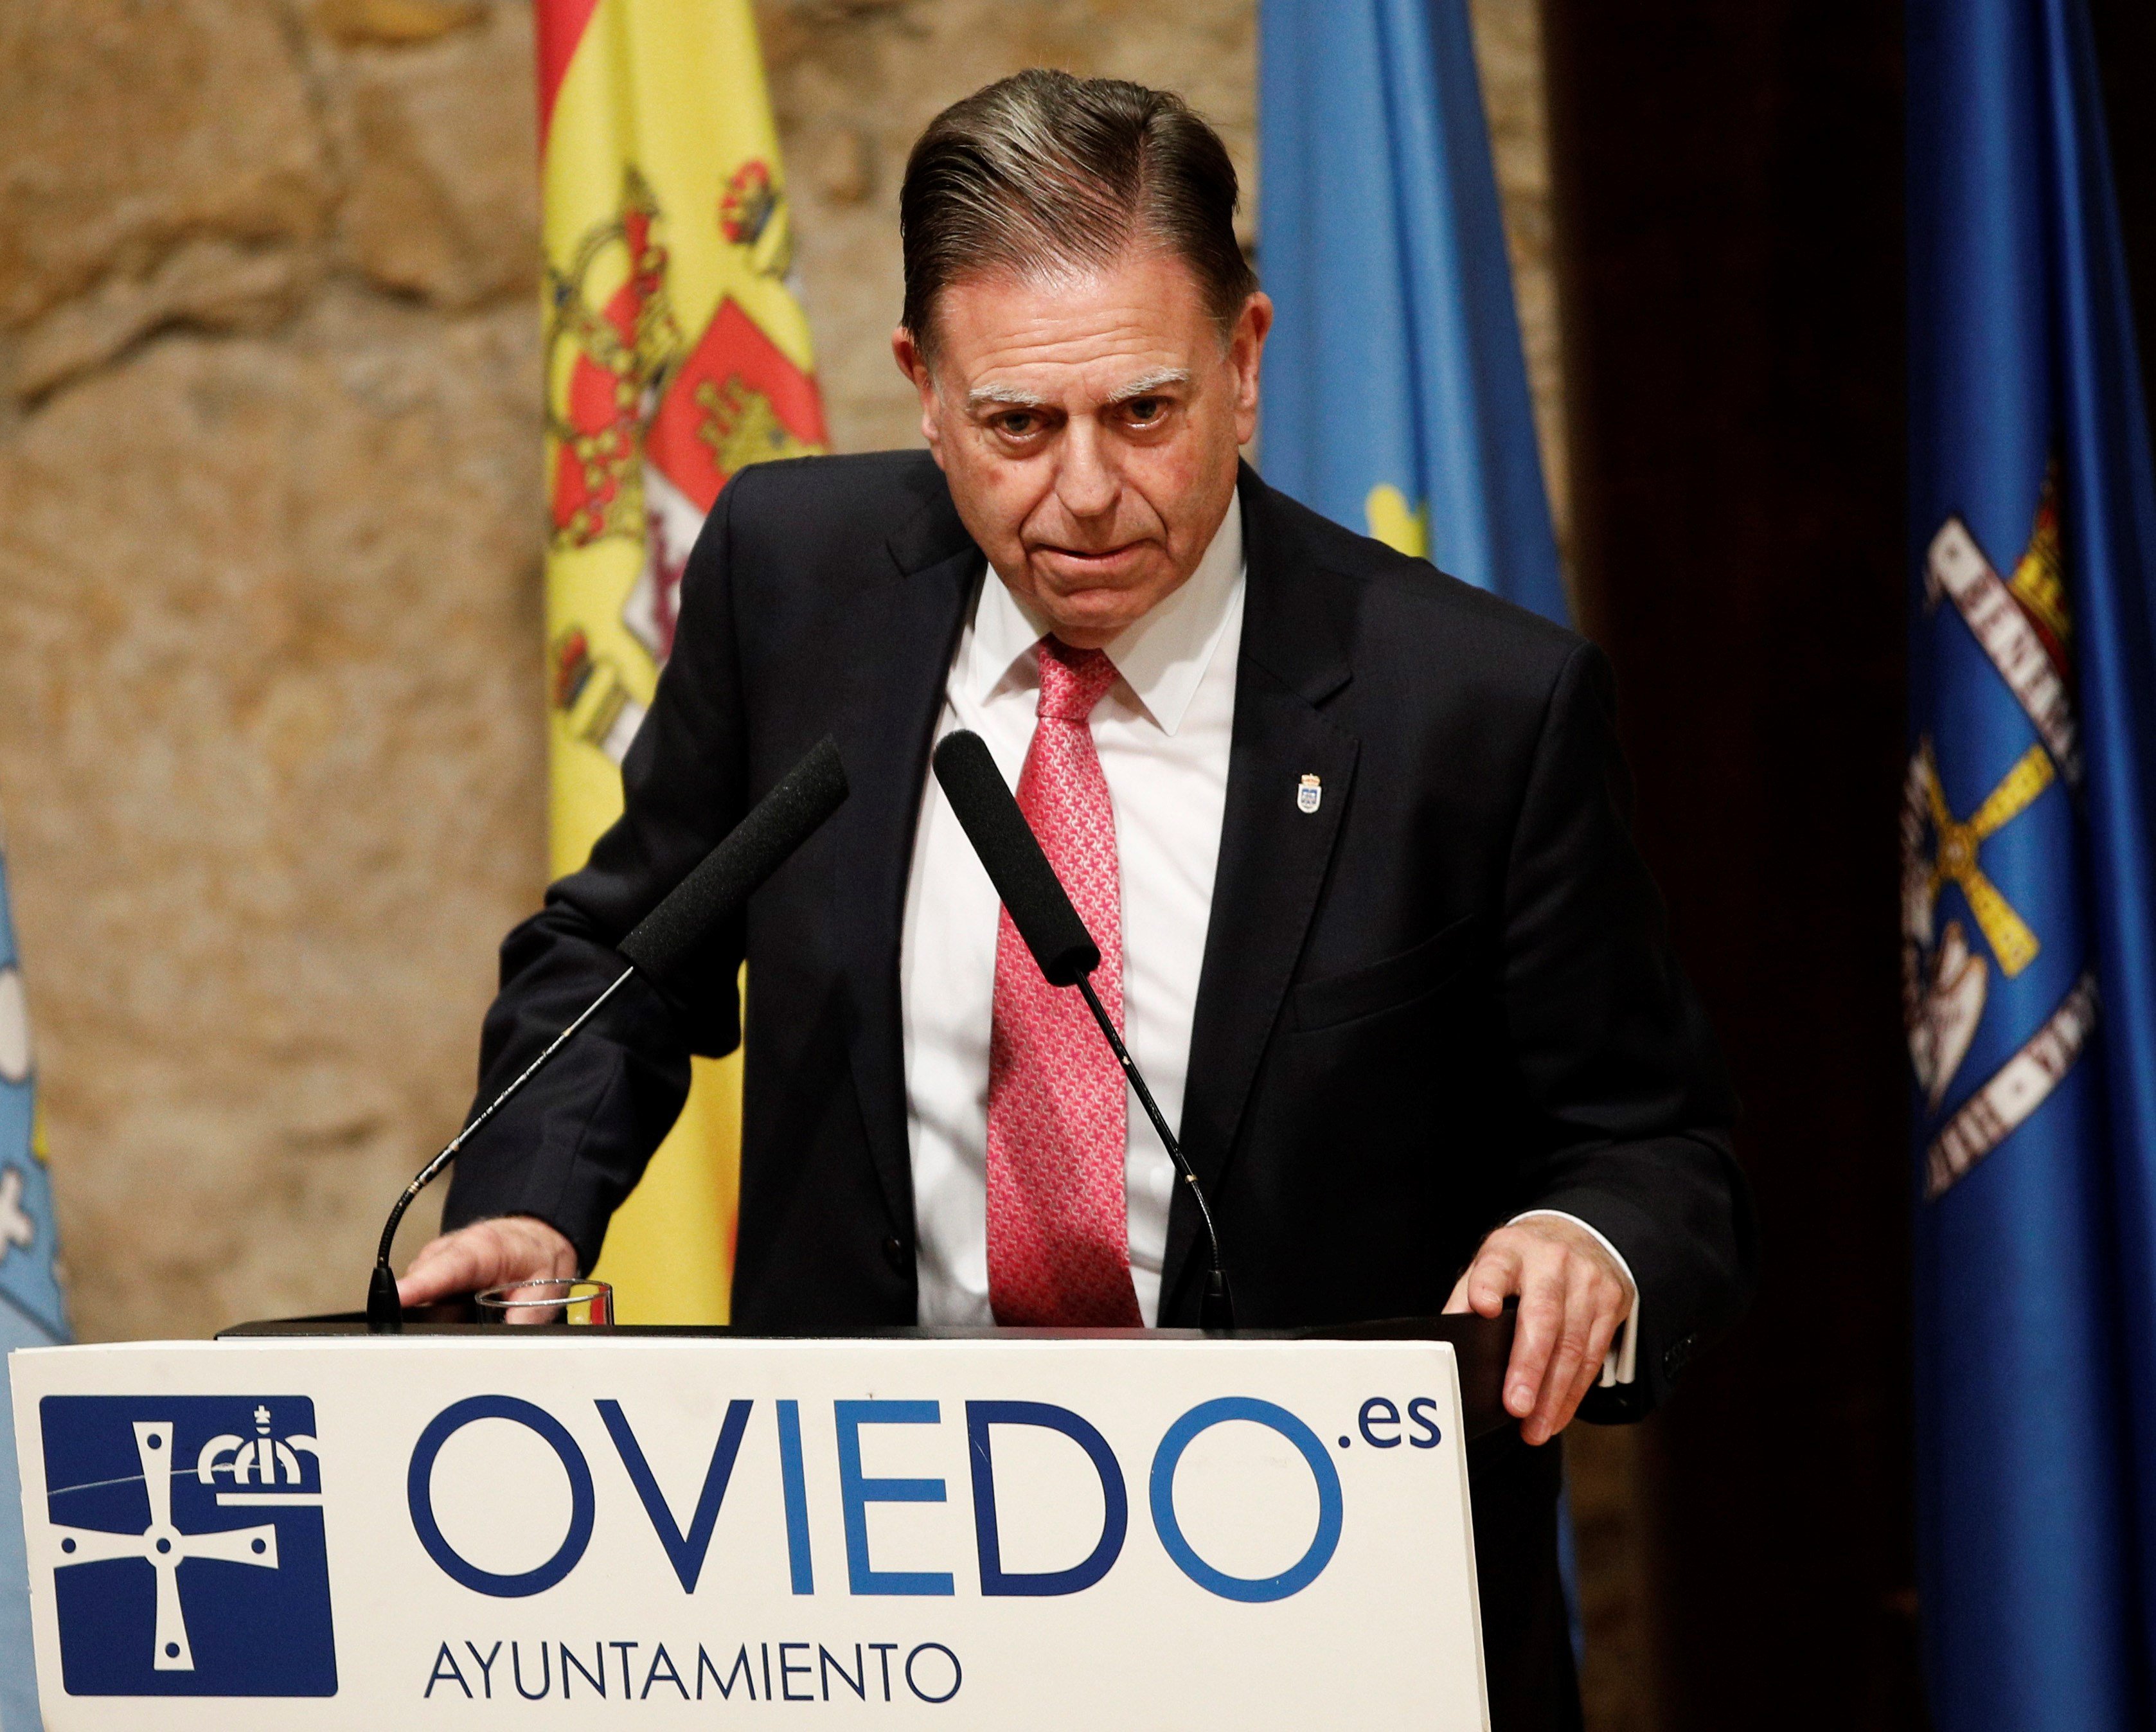 El alcalde del PP de Oviedo recupera los nombres franquistas de las calles